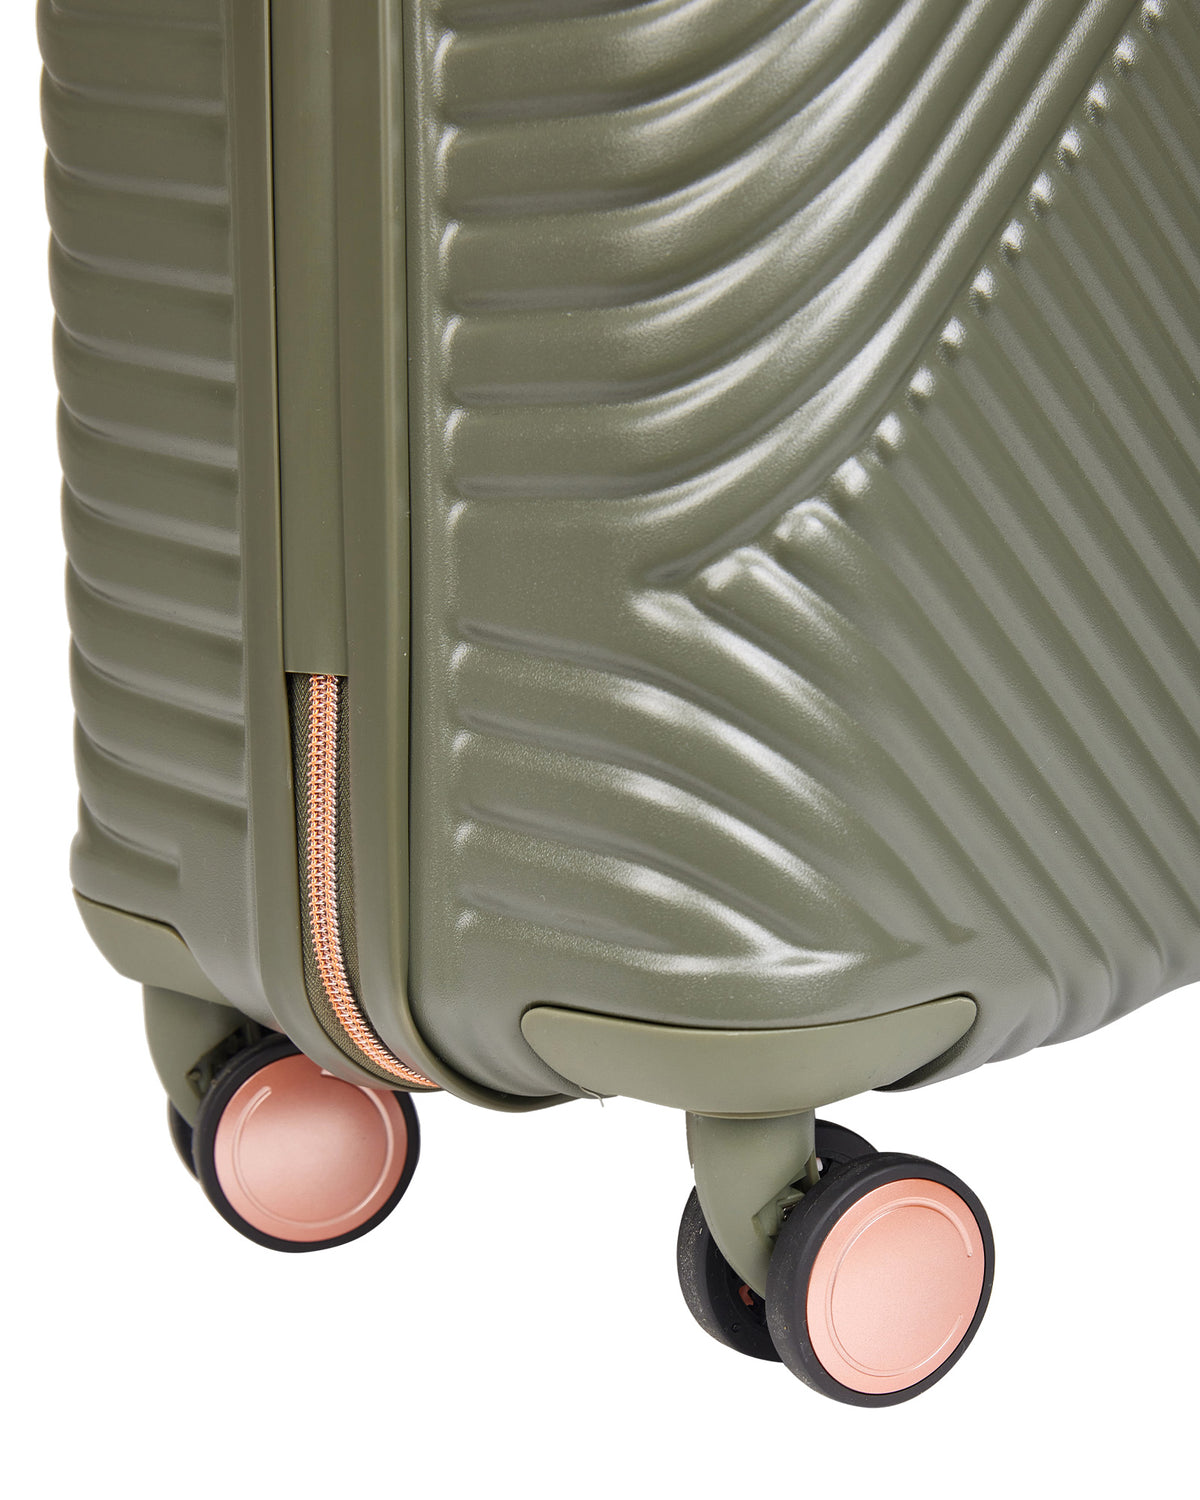 Suitcase Medium